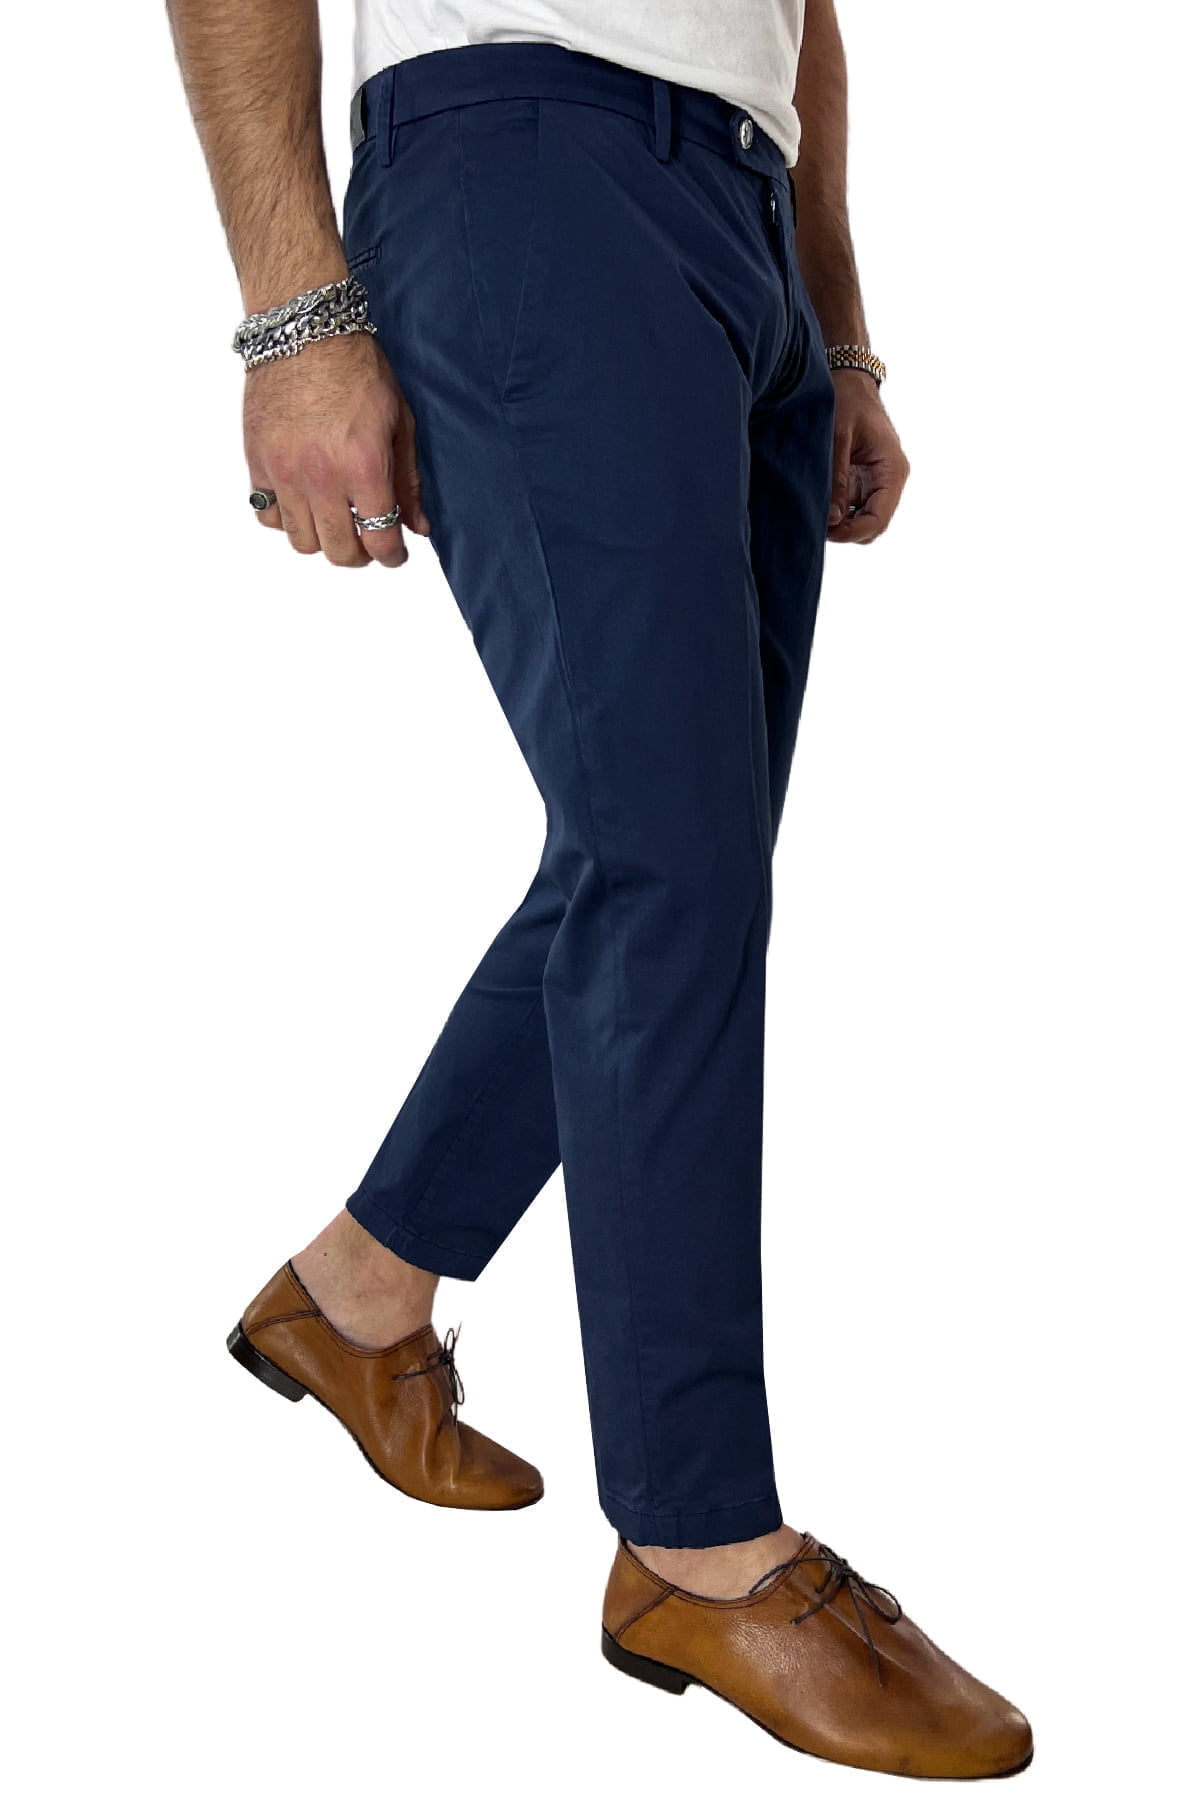 Pantalone uomo blu in Cotone tasca america leggermente elastico estivo